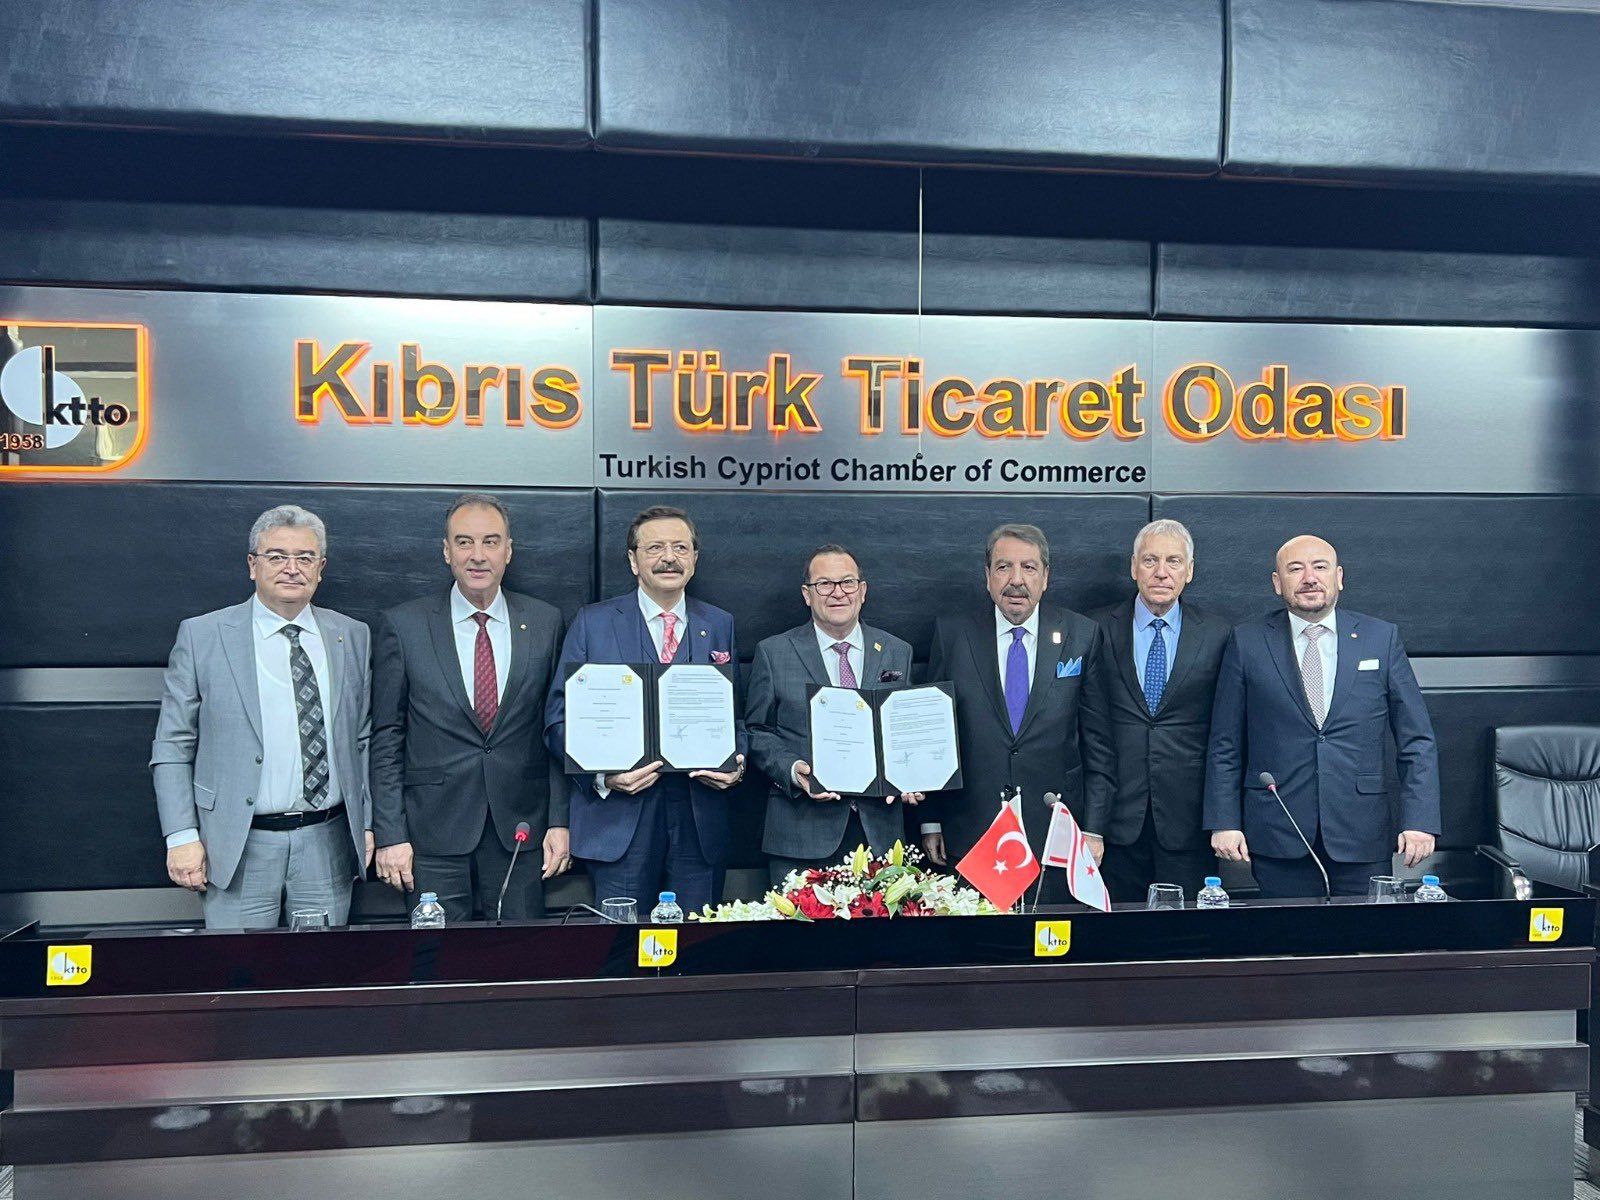 TOBB Yönetim Kurulu Üyesi ve Odamız Başkanı Hakan ÜLKEN, TOBB Başkanımız Sn. M. Rifat HİSARCIKLIOĞLU başkanlığında gerçekleştirilen Kıbrıs Türk Ticaret Odası (KTTO) ziyaretine katılım sağladı.